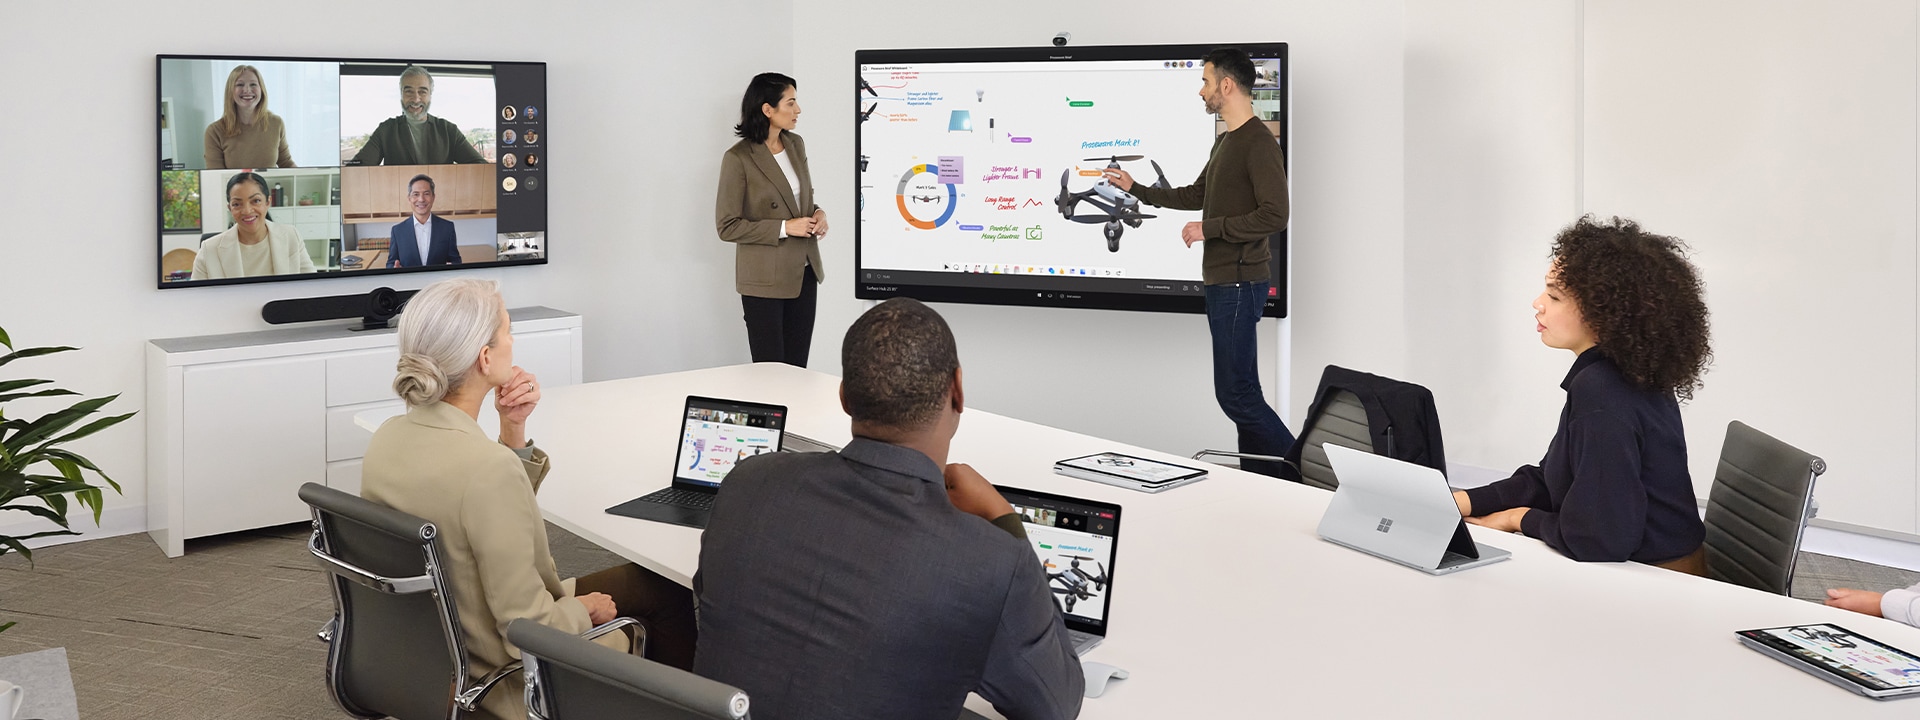 Dos trabajadores colaboran mediante Surface Hub 2S mientras lideran una reunión virtual en Teams en un dispositivo Surface Laptop sobre un escritorio cercano